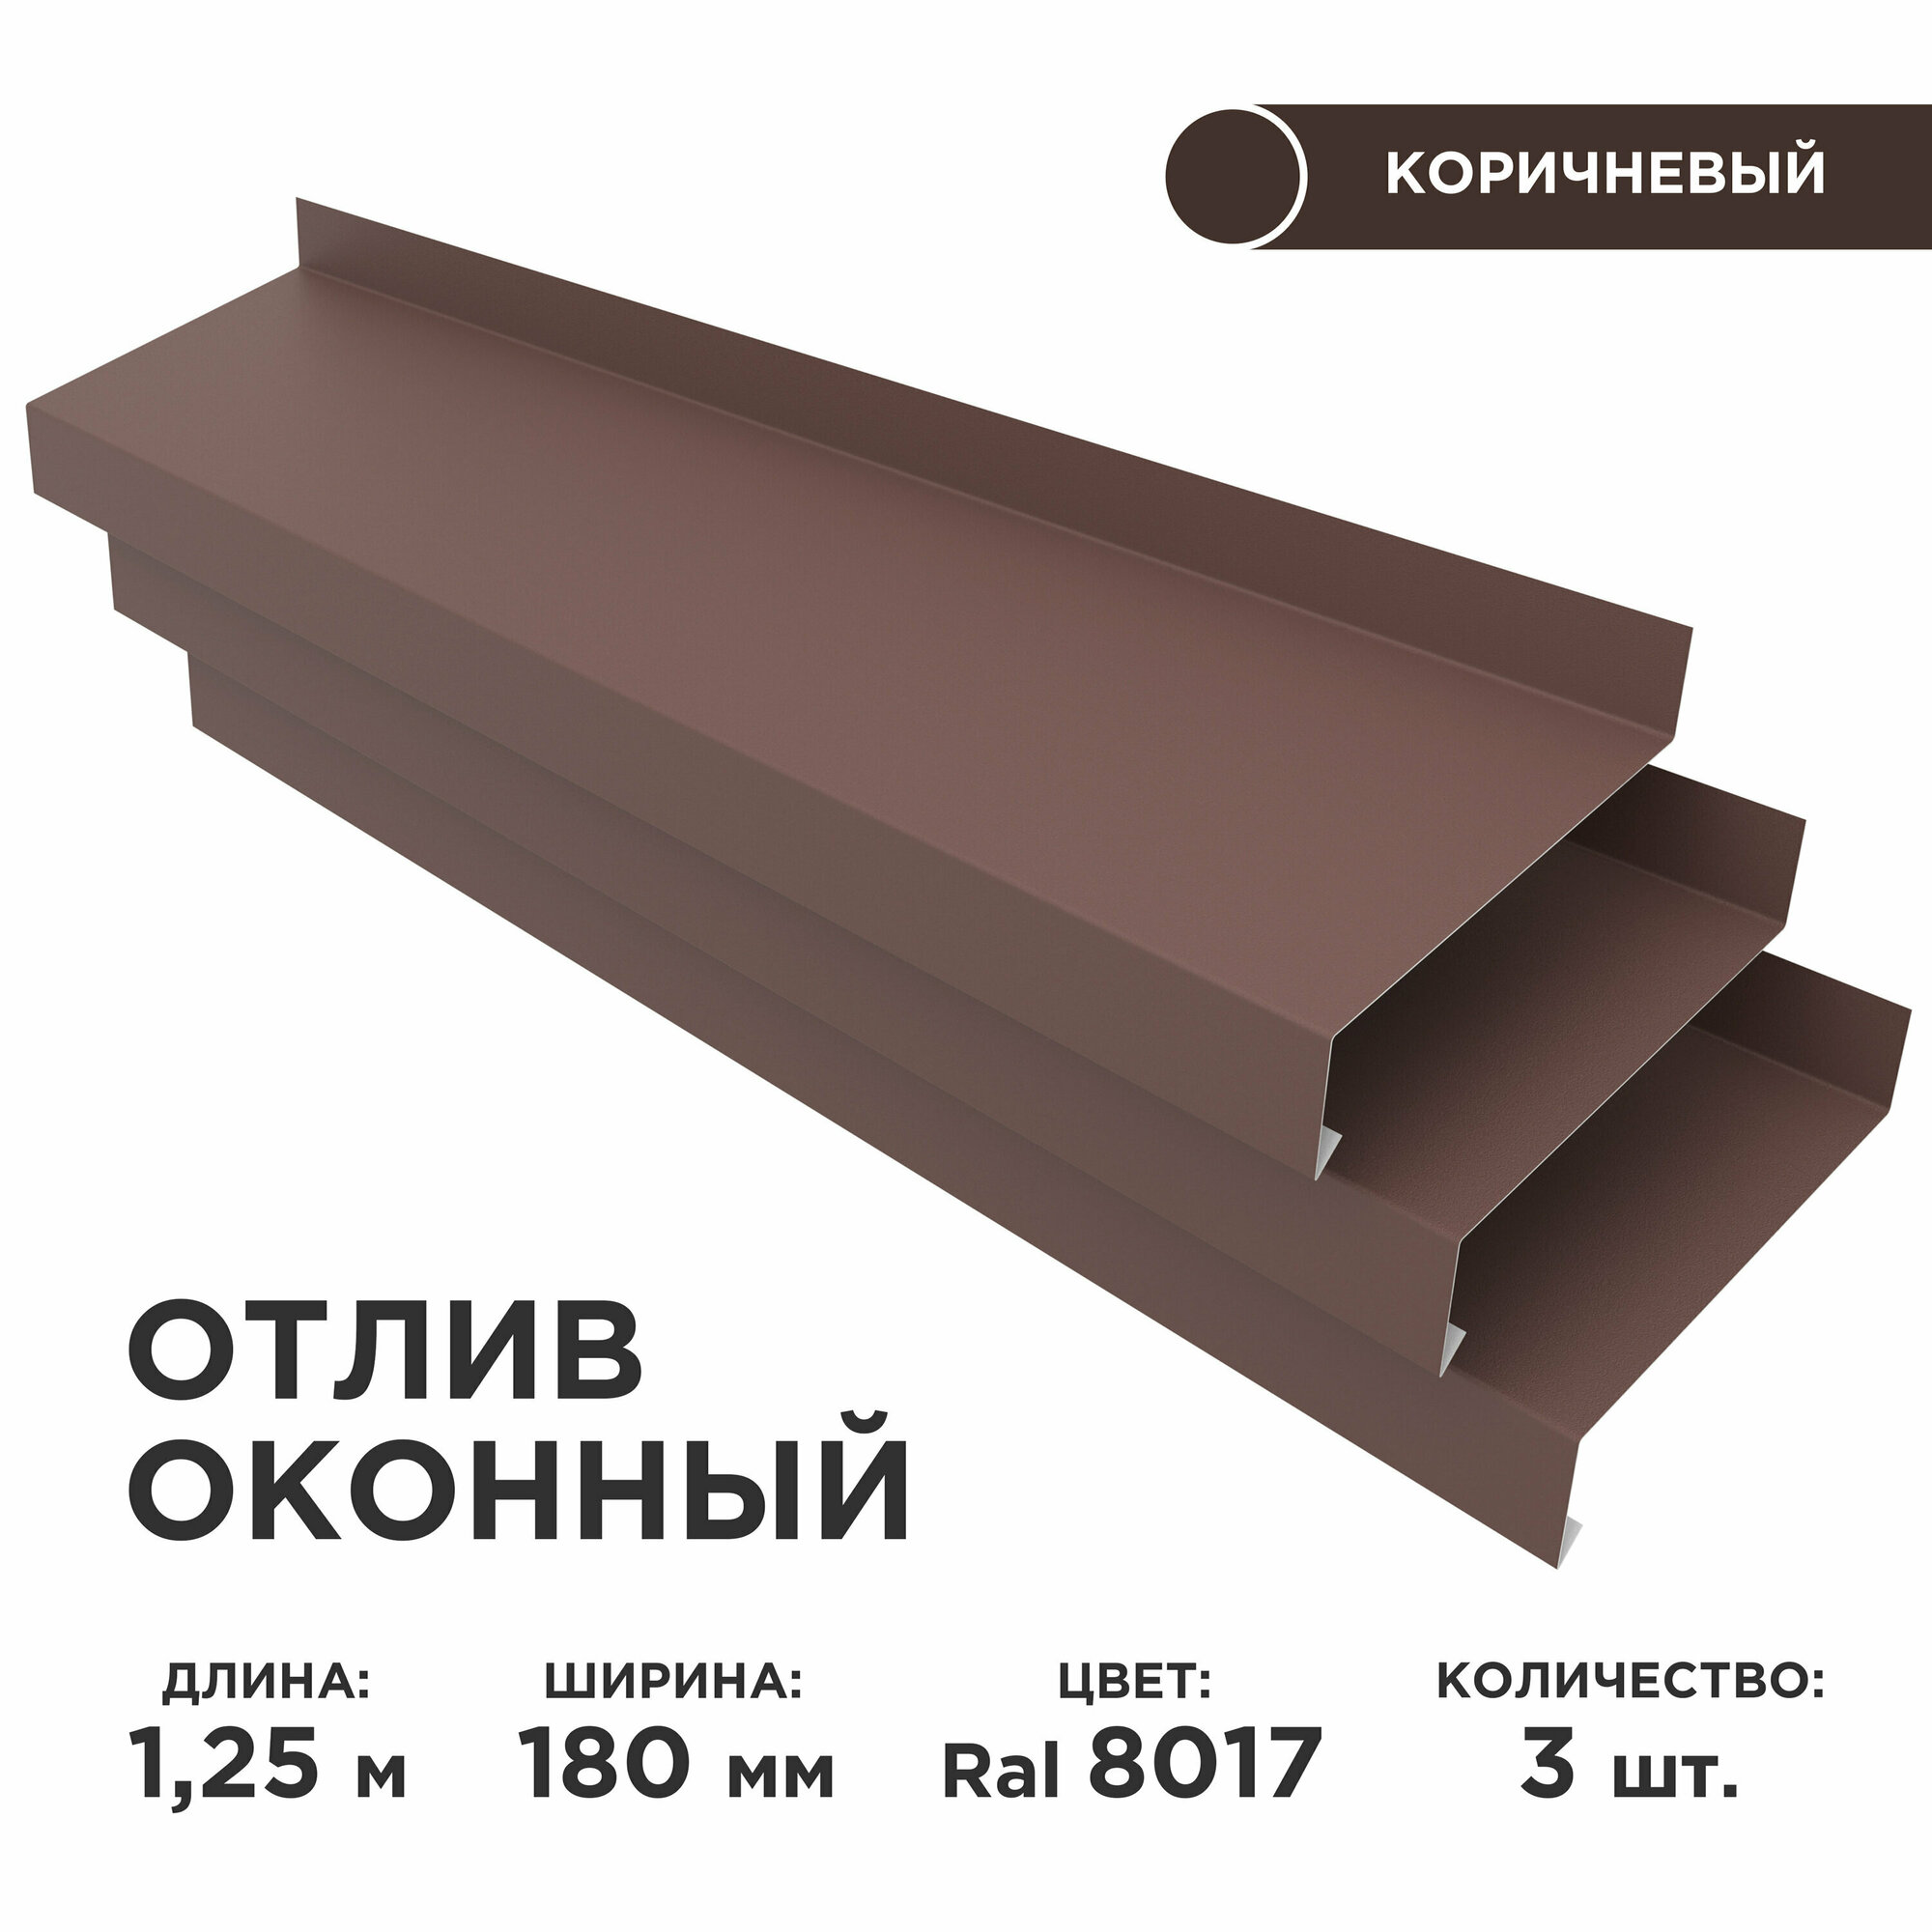 Отлив оконный ширина полки 180мм/ отлив для окна / цвет коричневый(RAL 8017) Длина 125м 3 штуки в комплекте